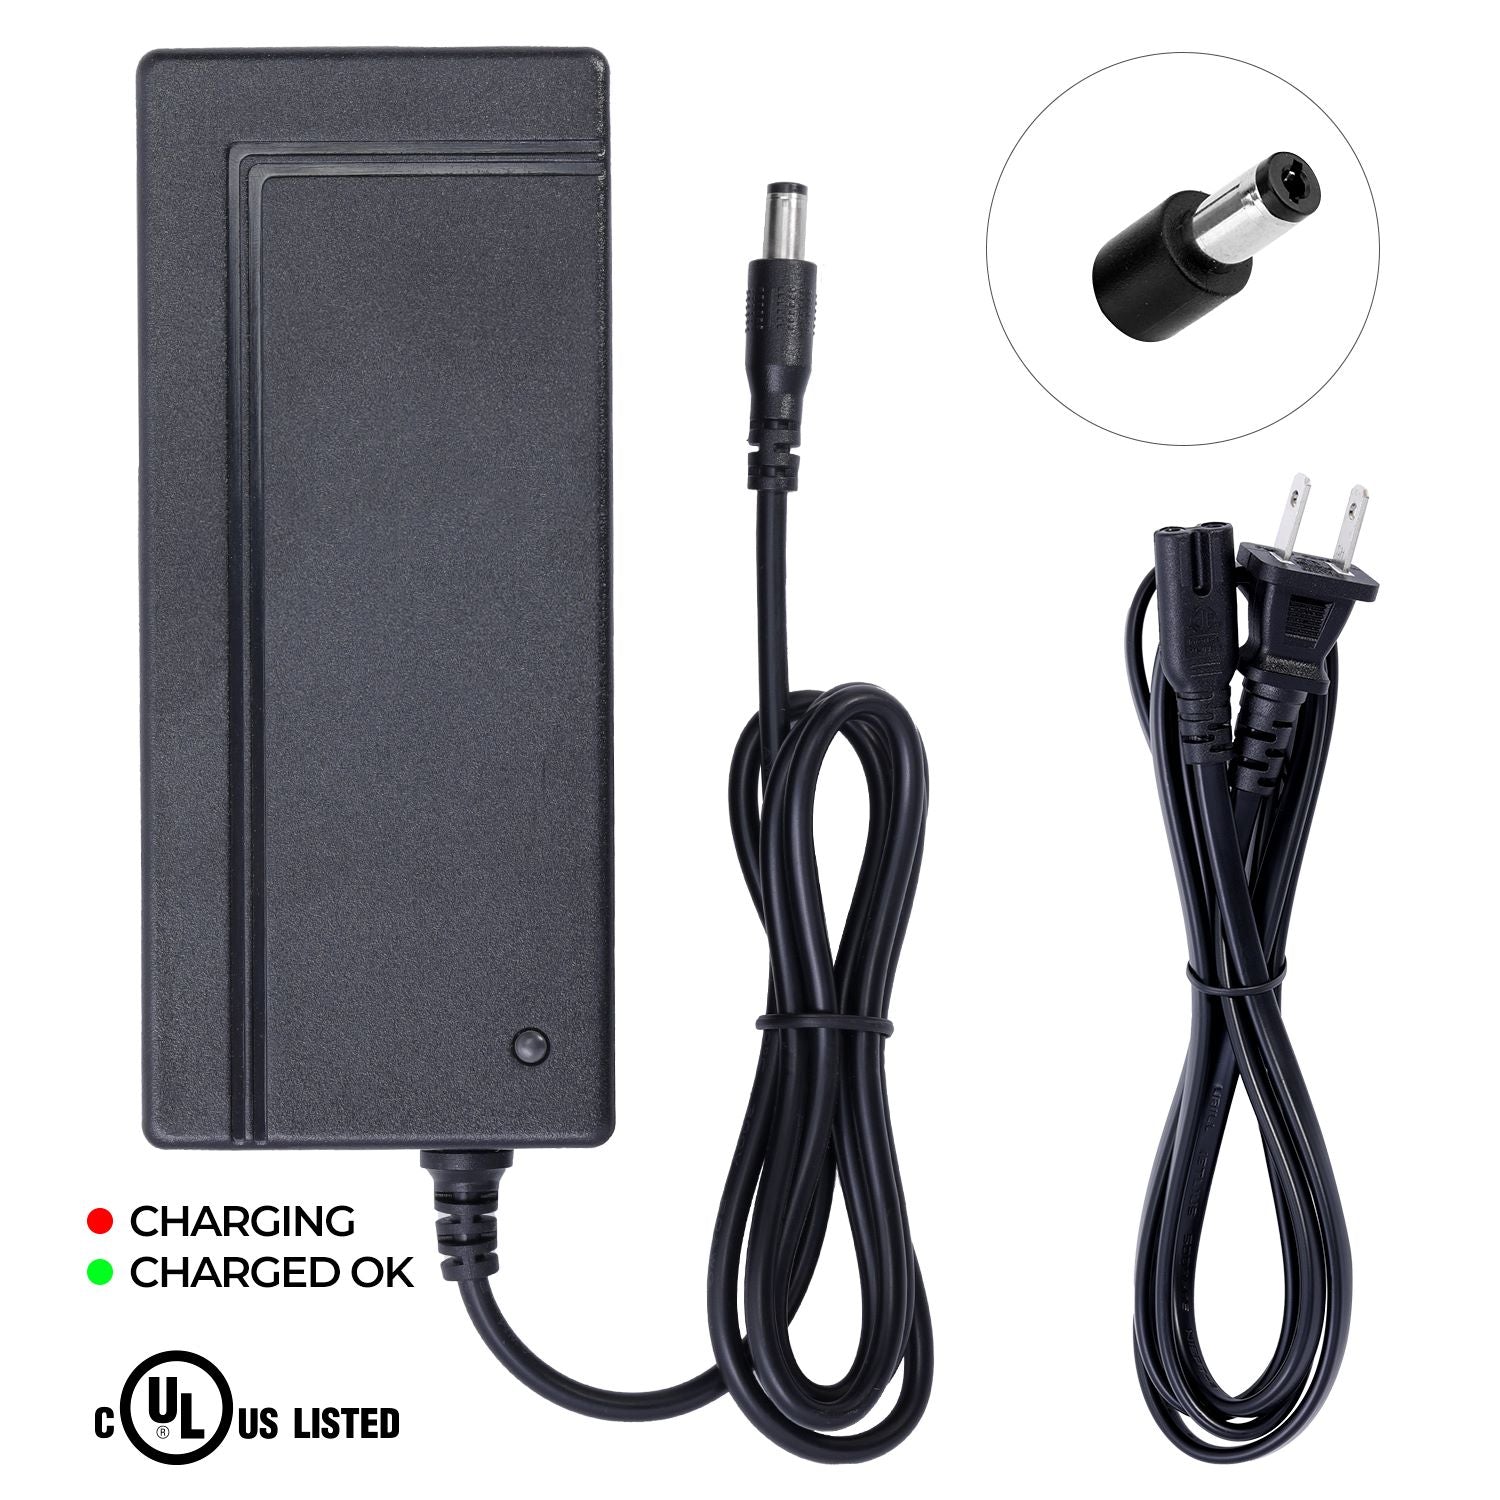 最低価格の EAGLE CDC charger #1486 模型製作用品 - www.cdsc-wsu.org